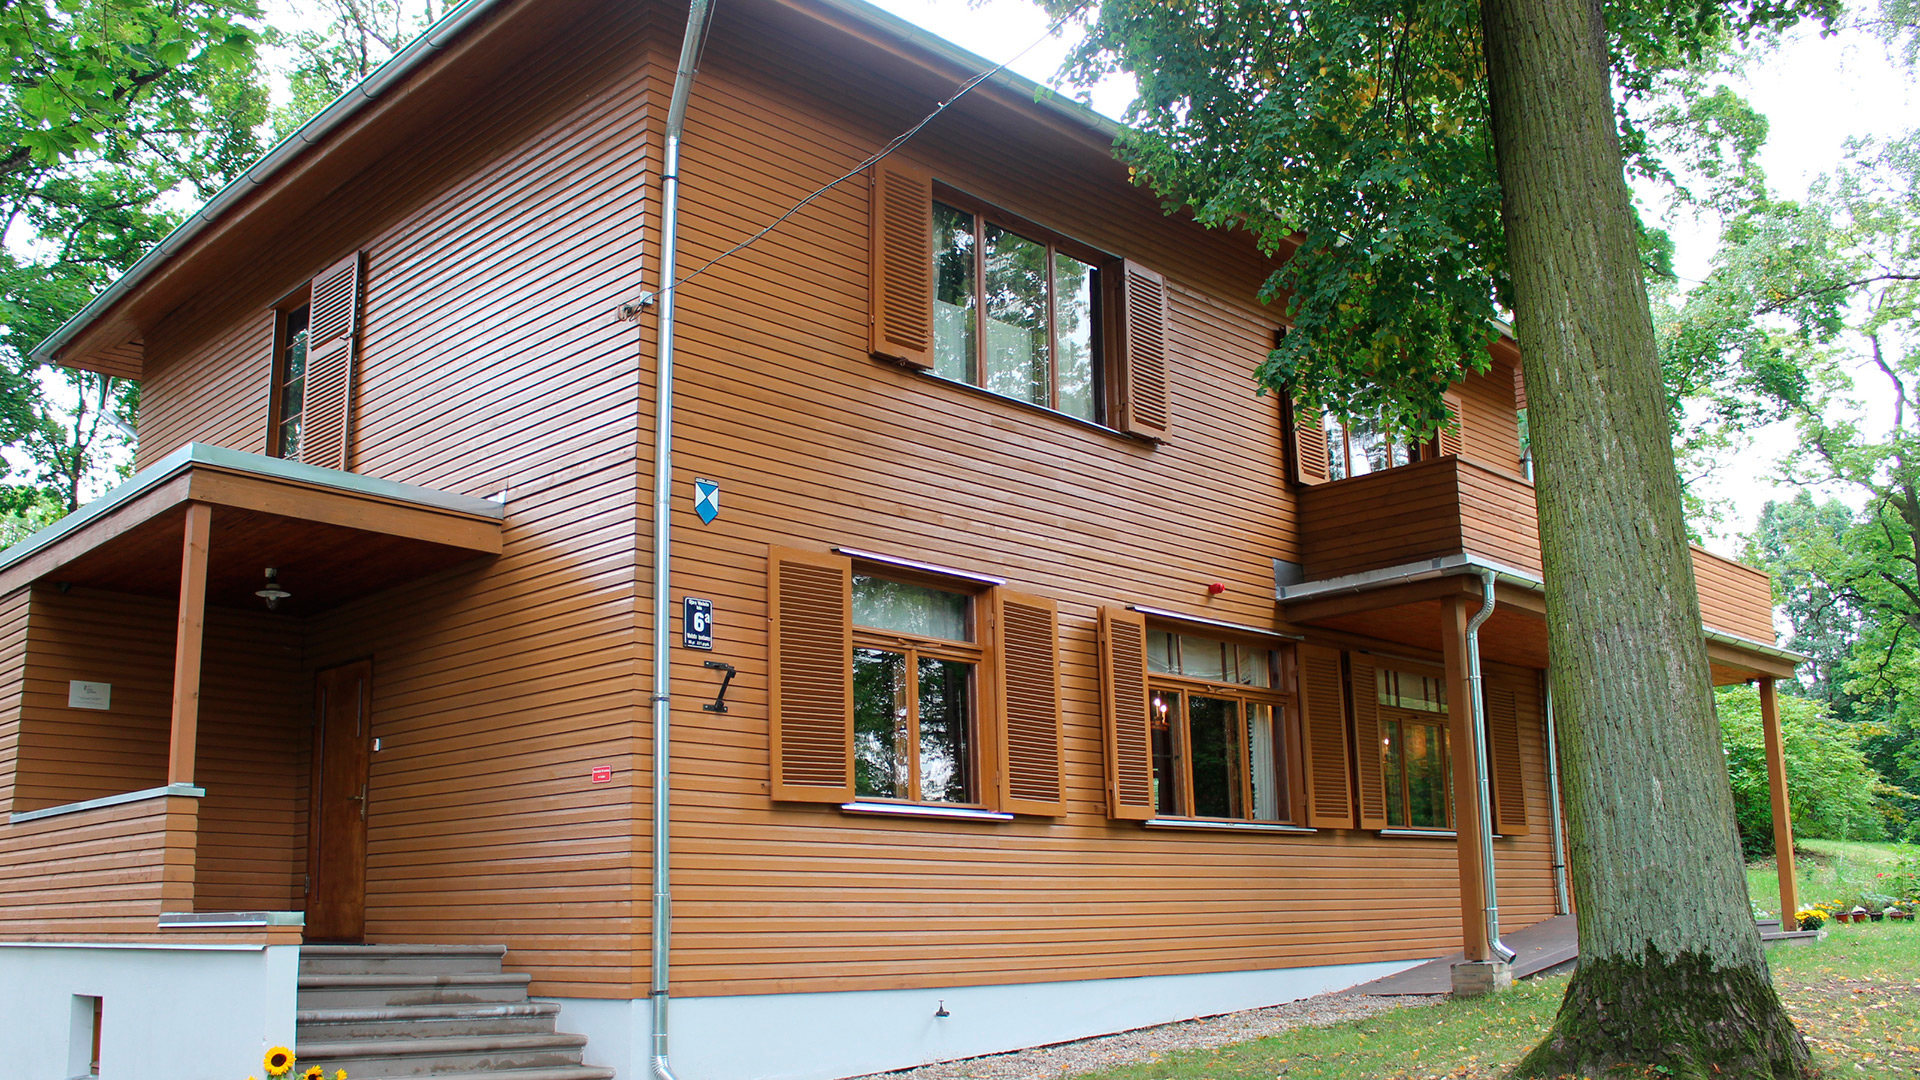 Bilde av huset Til Akuraters I 2017. Foto: Anja Heie, Riksantikvaren